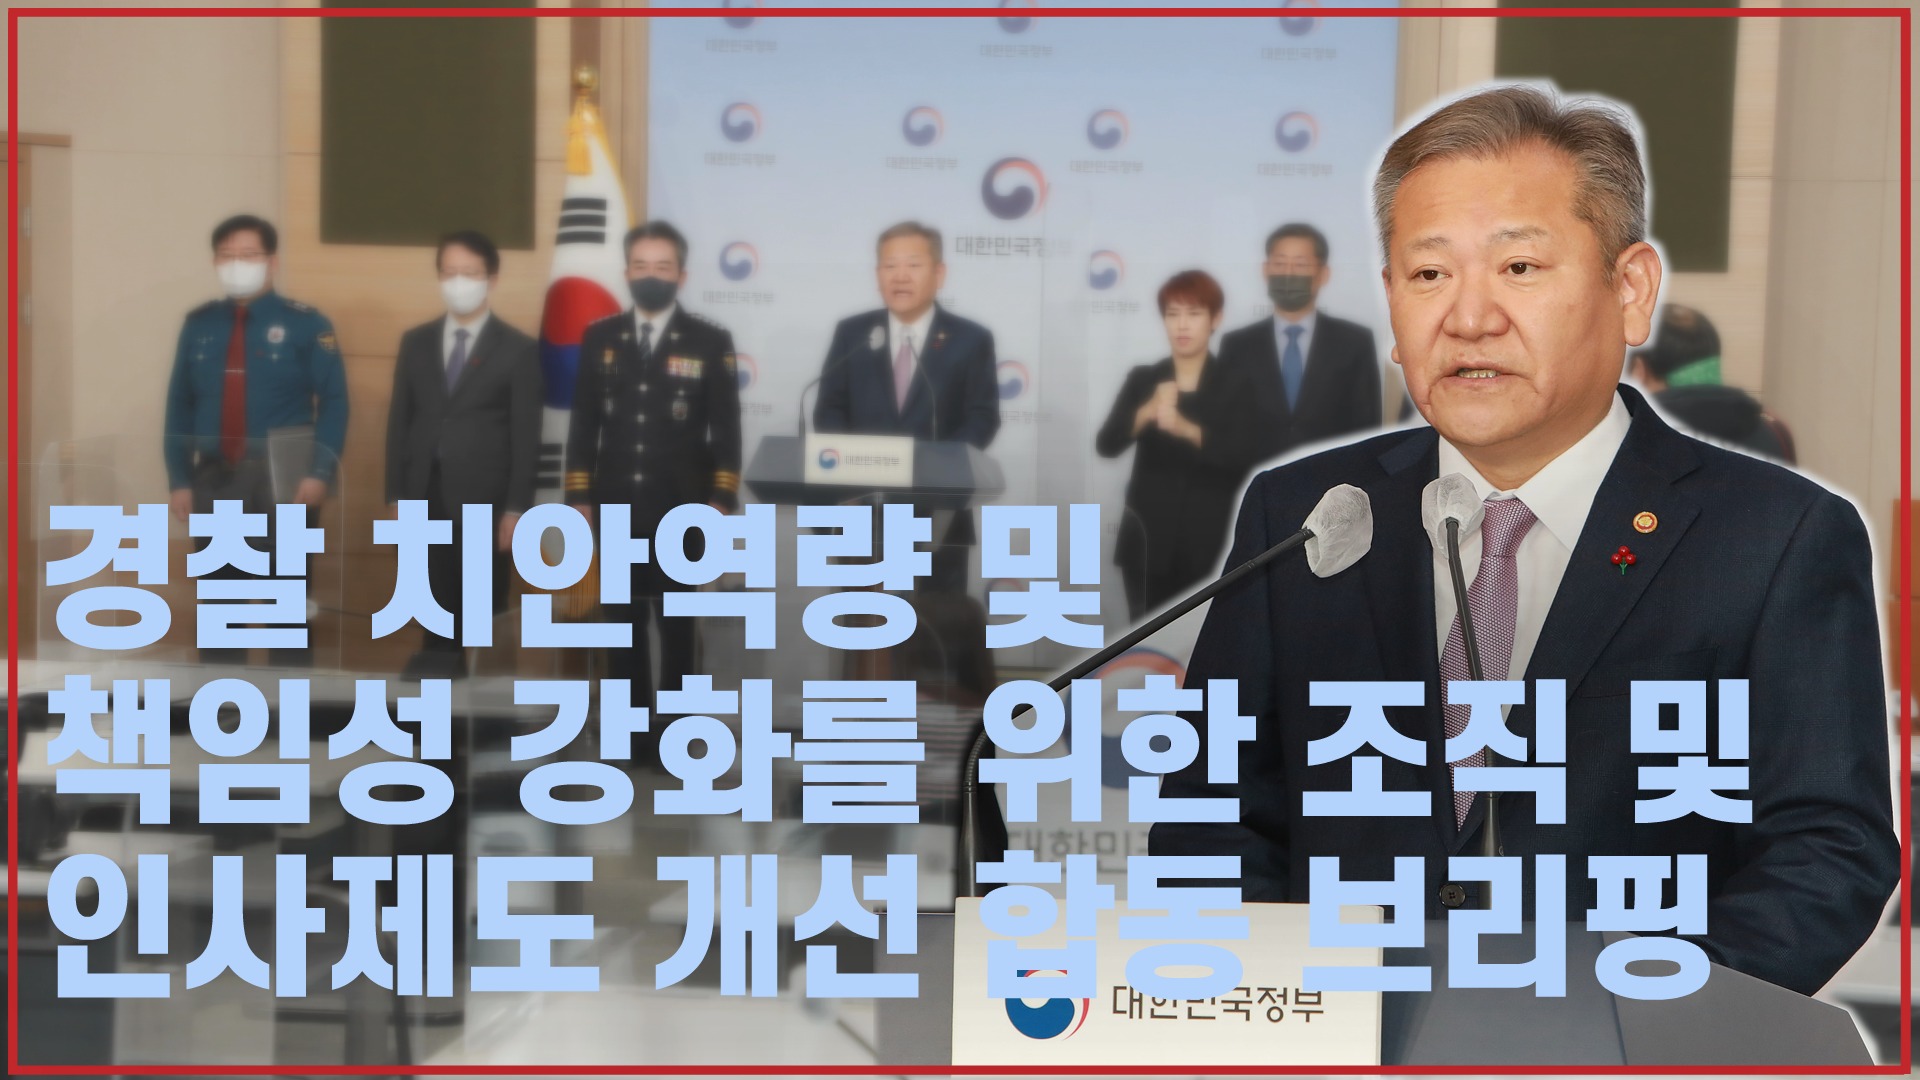 이상민 장관, 경찰 치안역량 및 책임성 강화 관련 합동 브리핑